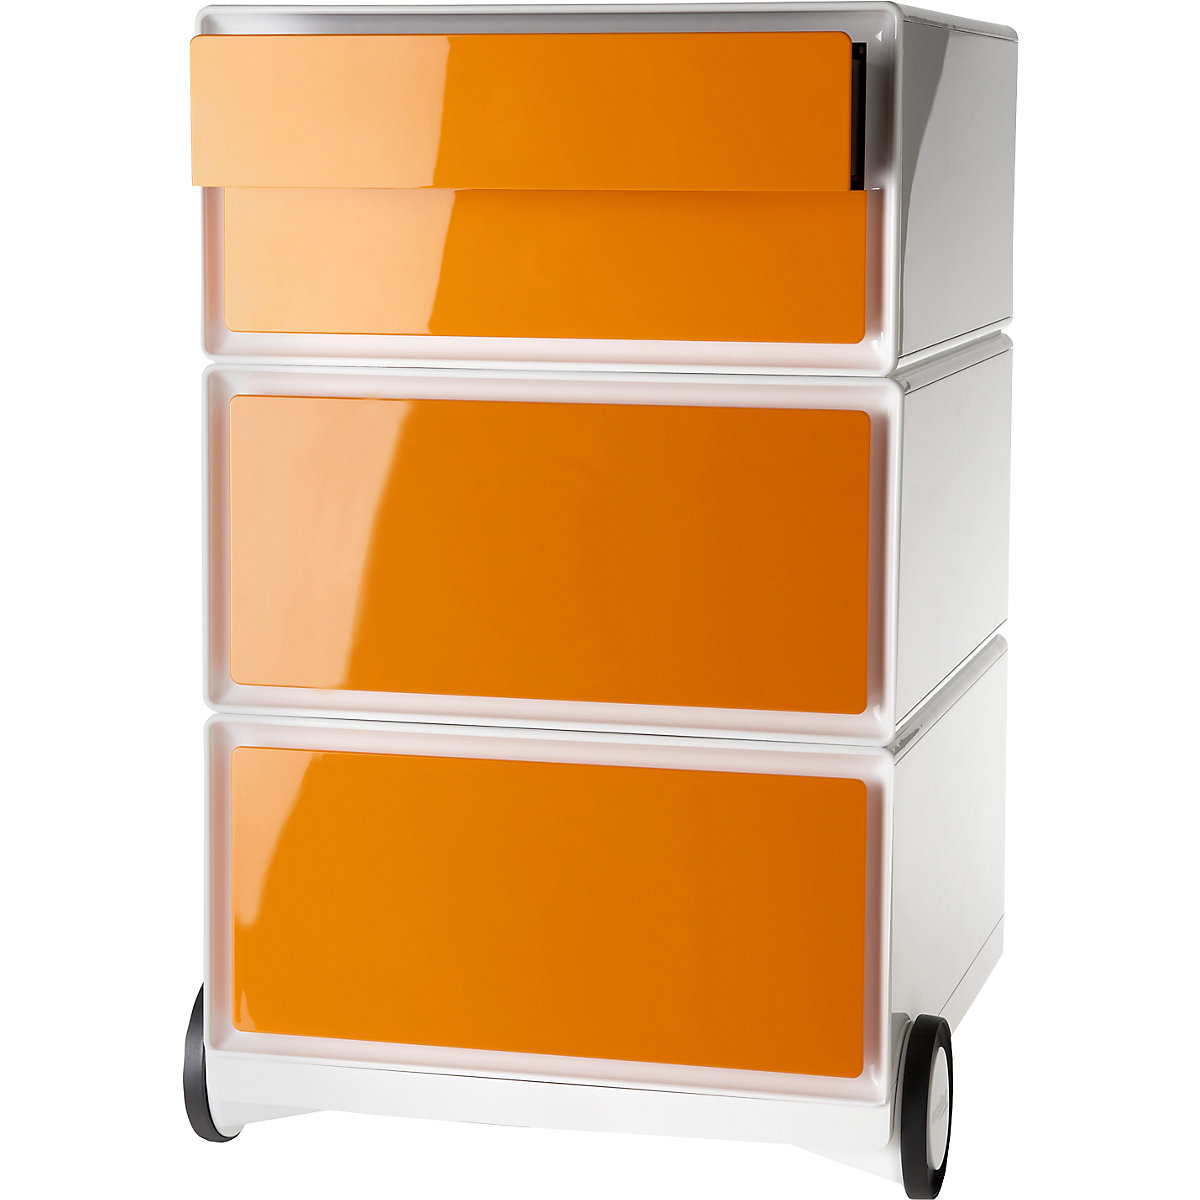 Pokretni ladičar easyBox® – Paperflow, 2 ladice, 2 plitke ladice, u bijeloj / narančastoj boji